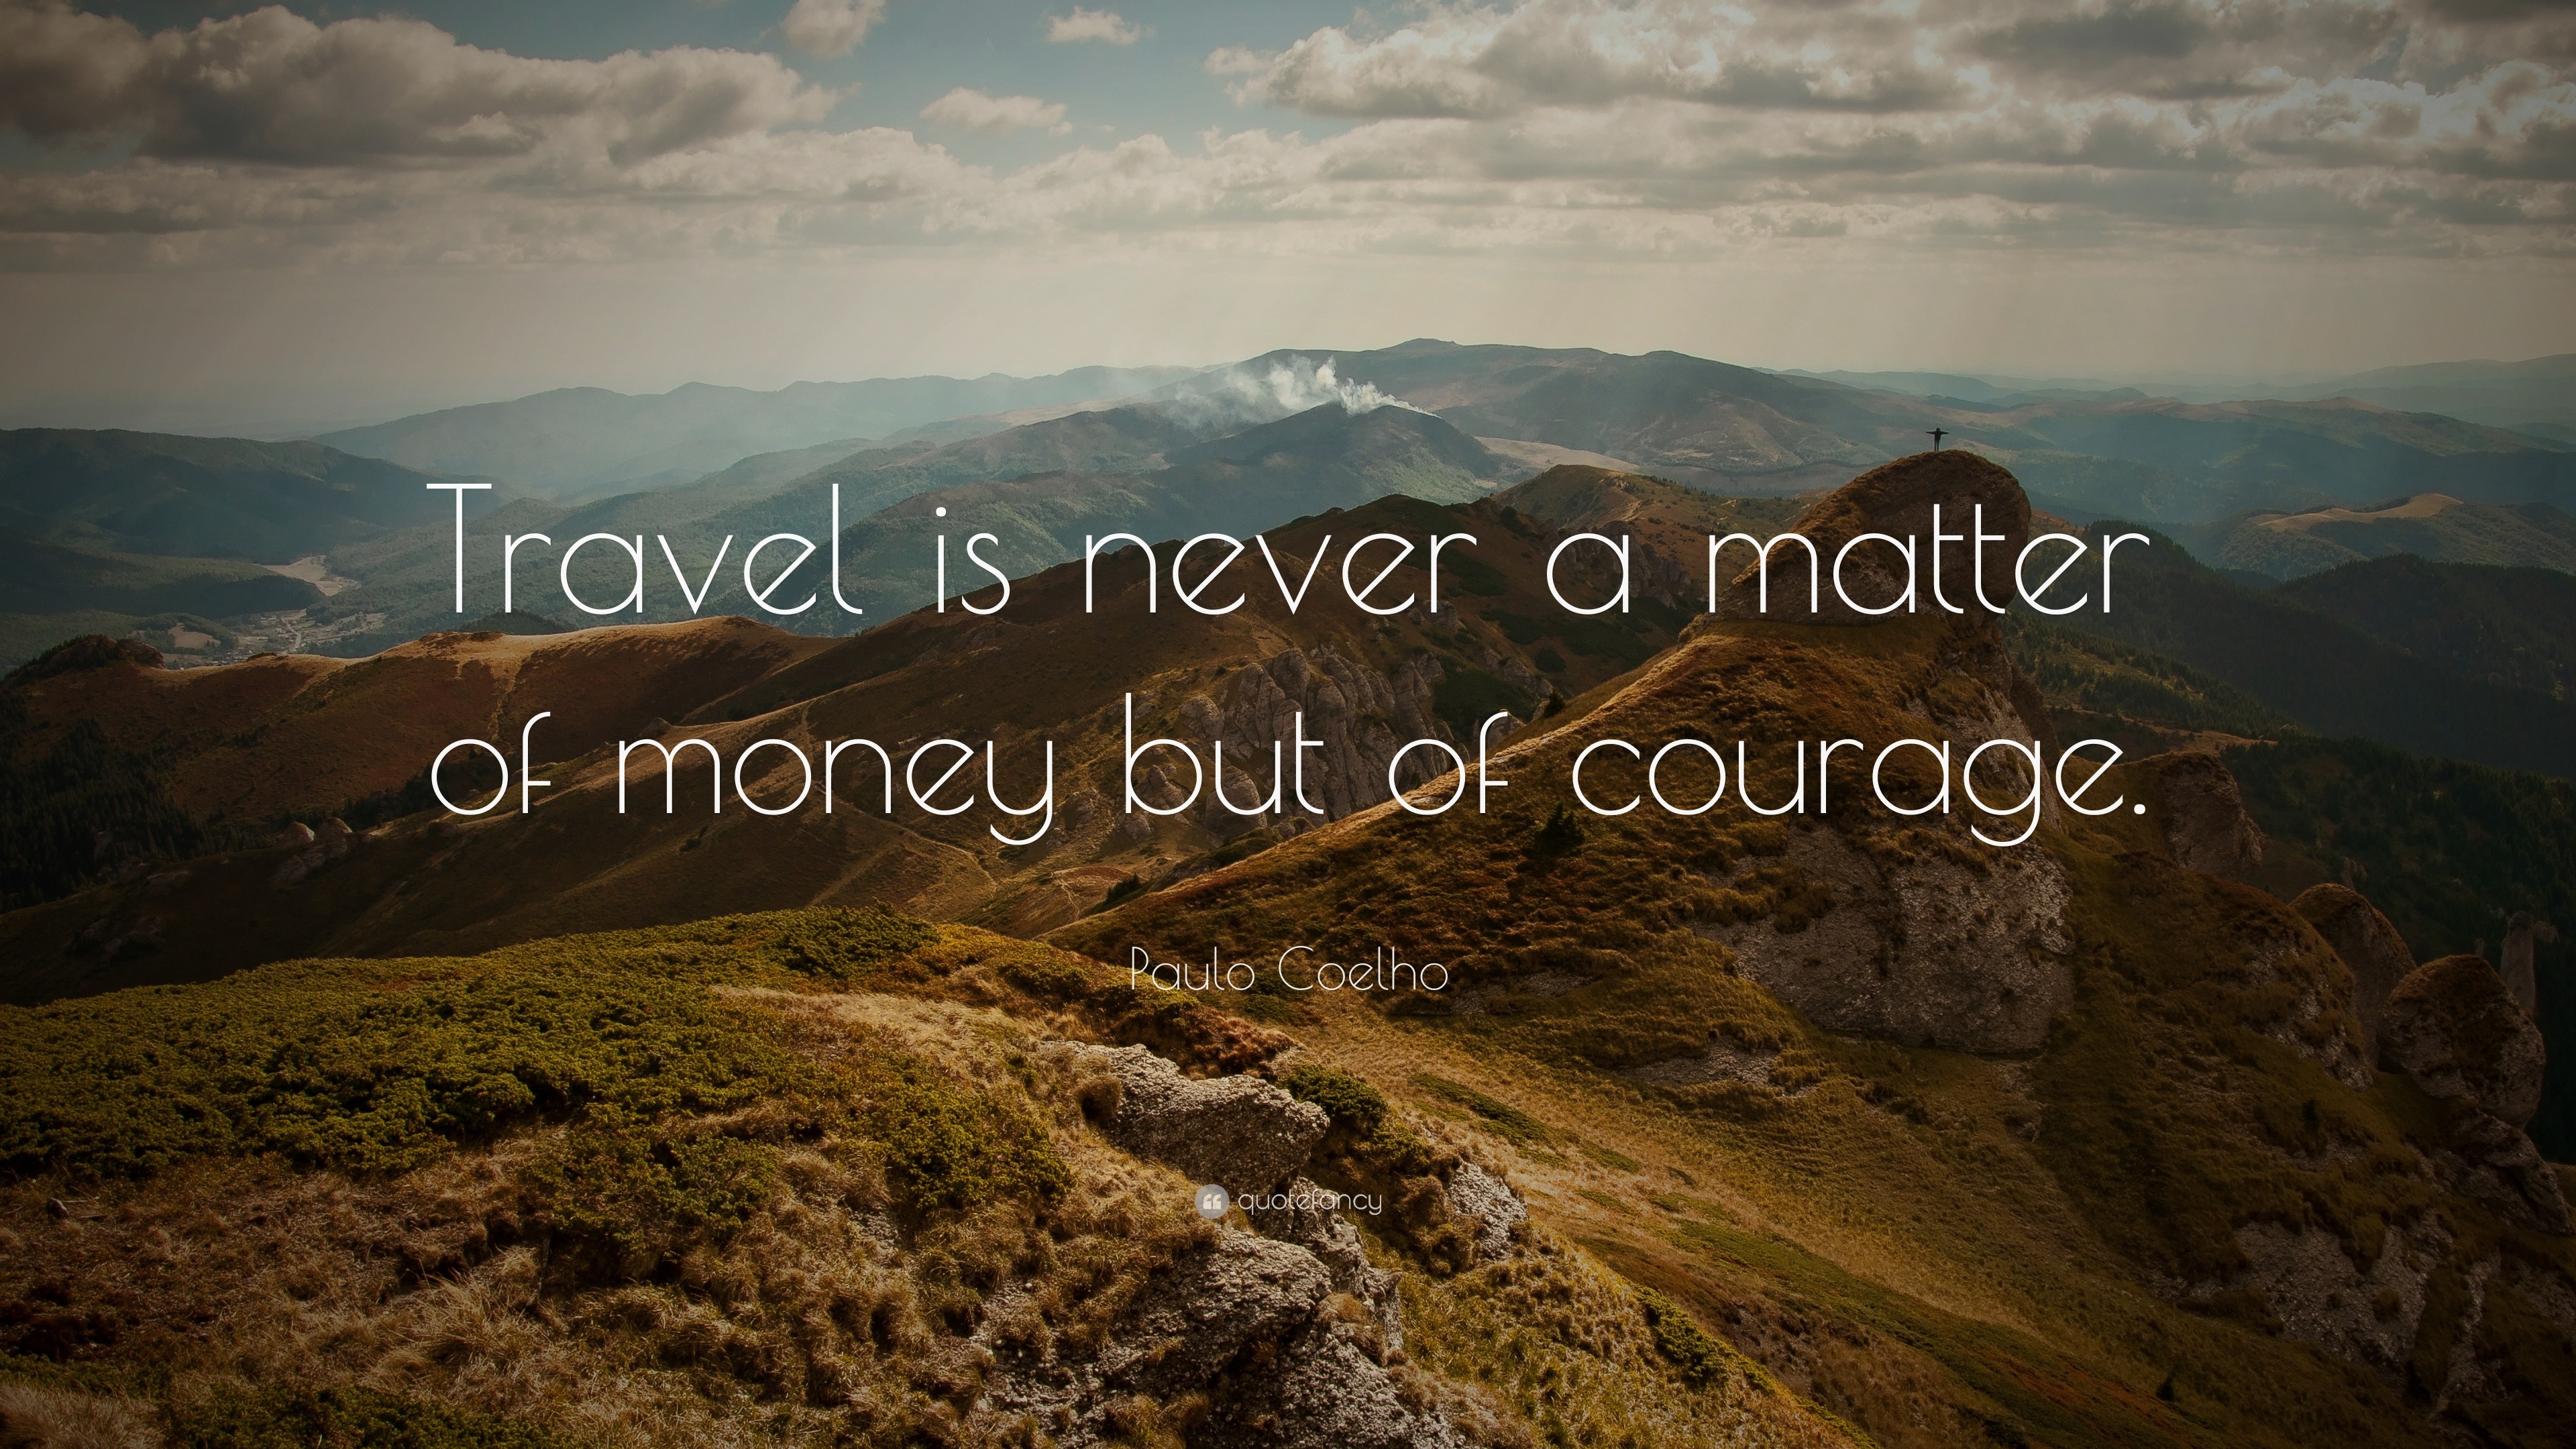 paulo coelho quotes on travel